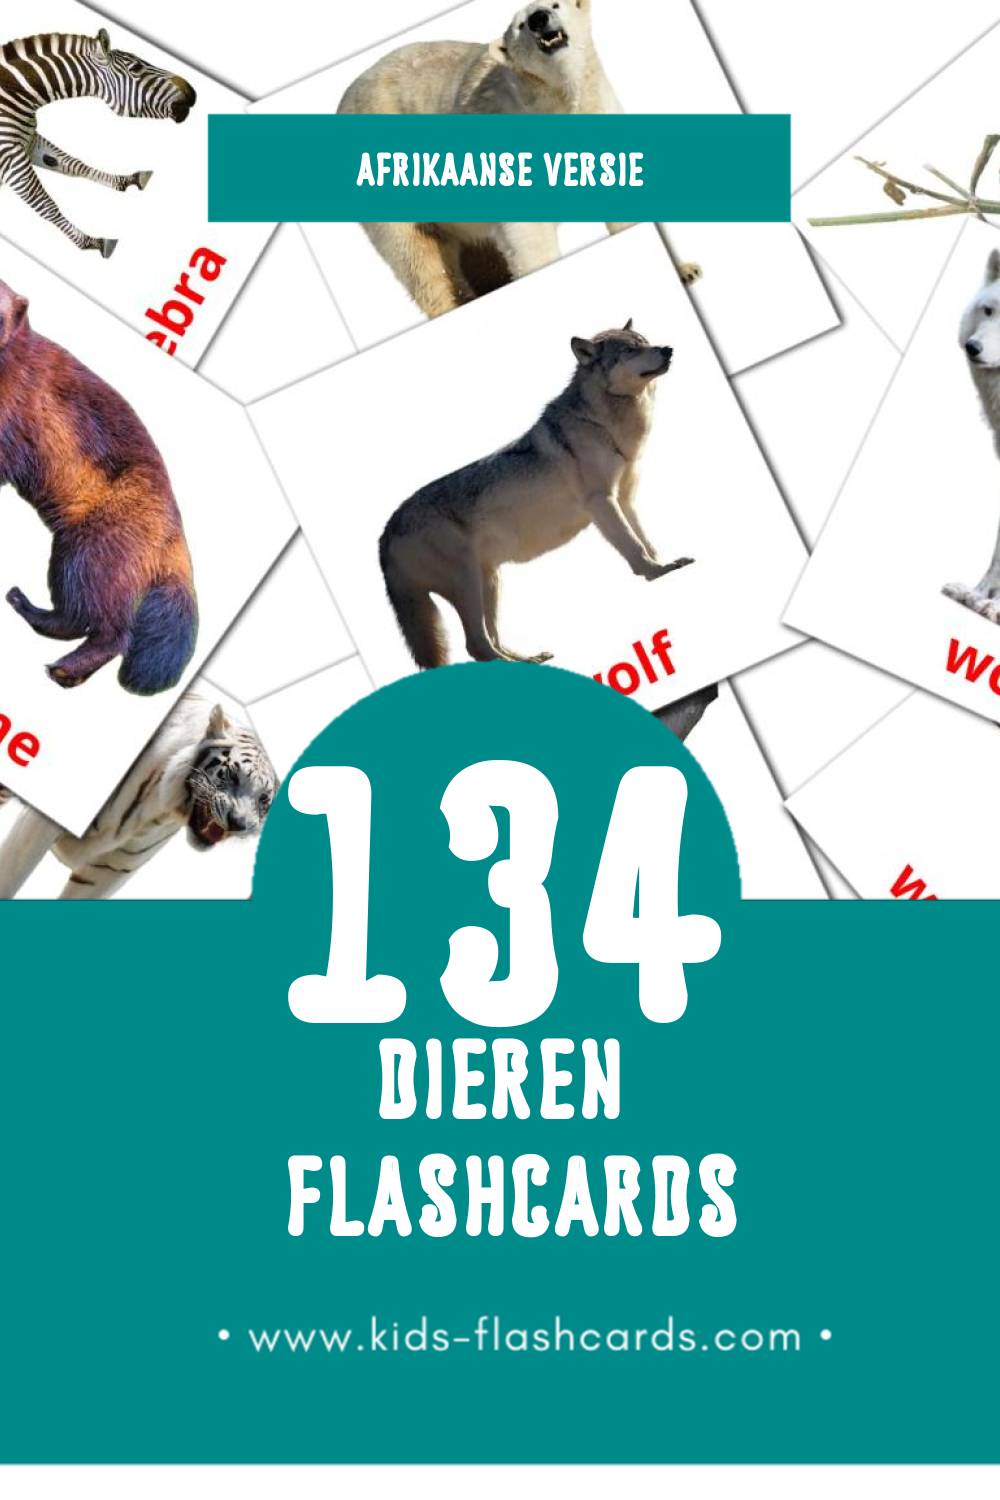 Visuele Diere Flashcards voor Kleuters (134 kaarten in het Afrikaans)